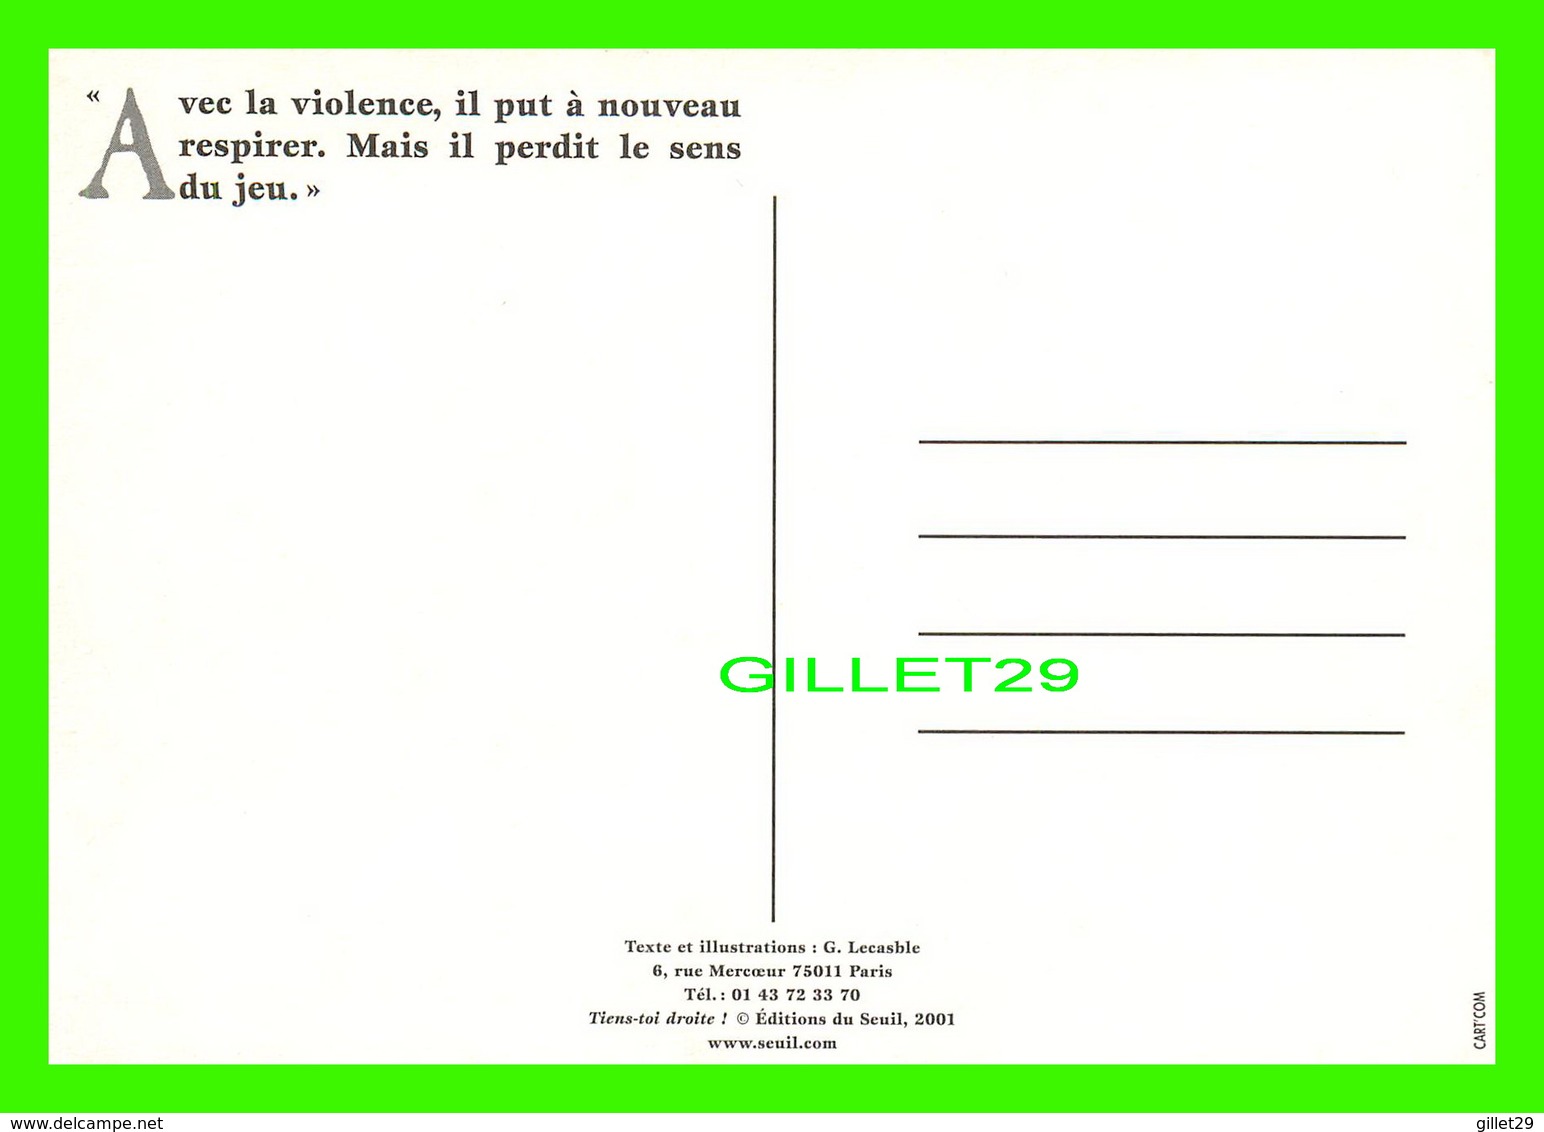 ADVERTISING - PUBLICITÉ - TIENS-TOI DROITE ! ÉDITIONS DU SEUIL, 2001 - ILLUSTRATIONS, G. LECASBLE - - Publicité